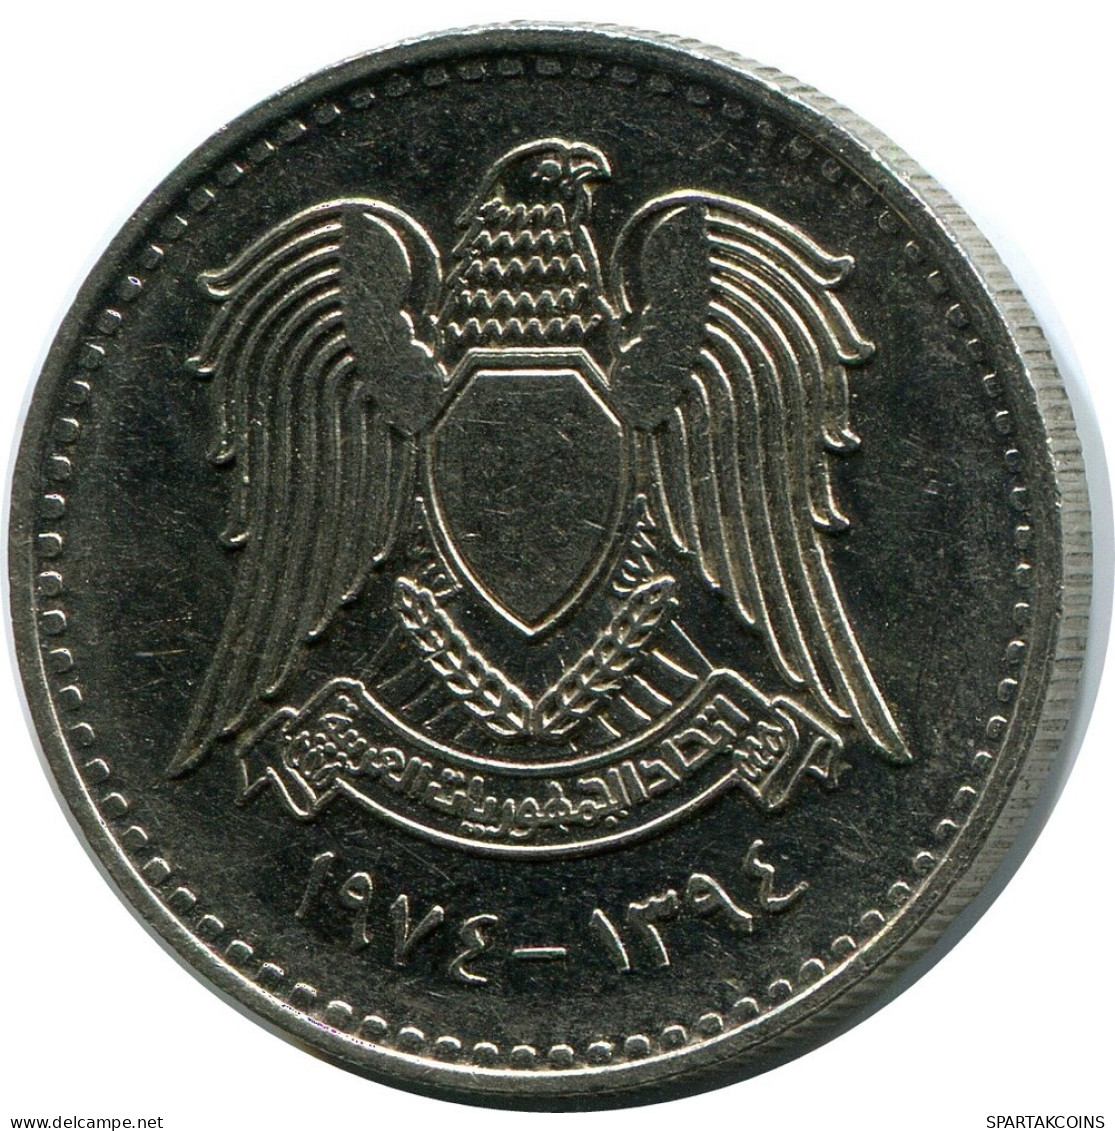 50 QIRSH 1974 SYRIA Islamic Coin #AR029.U.A - Syrien